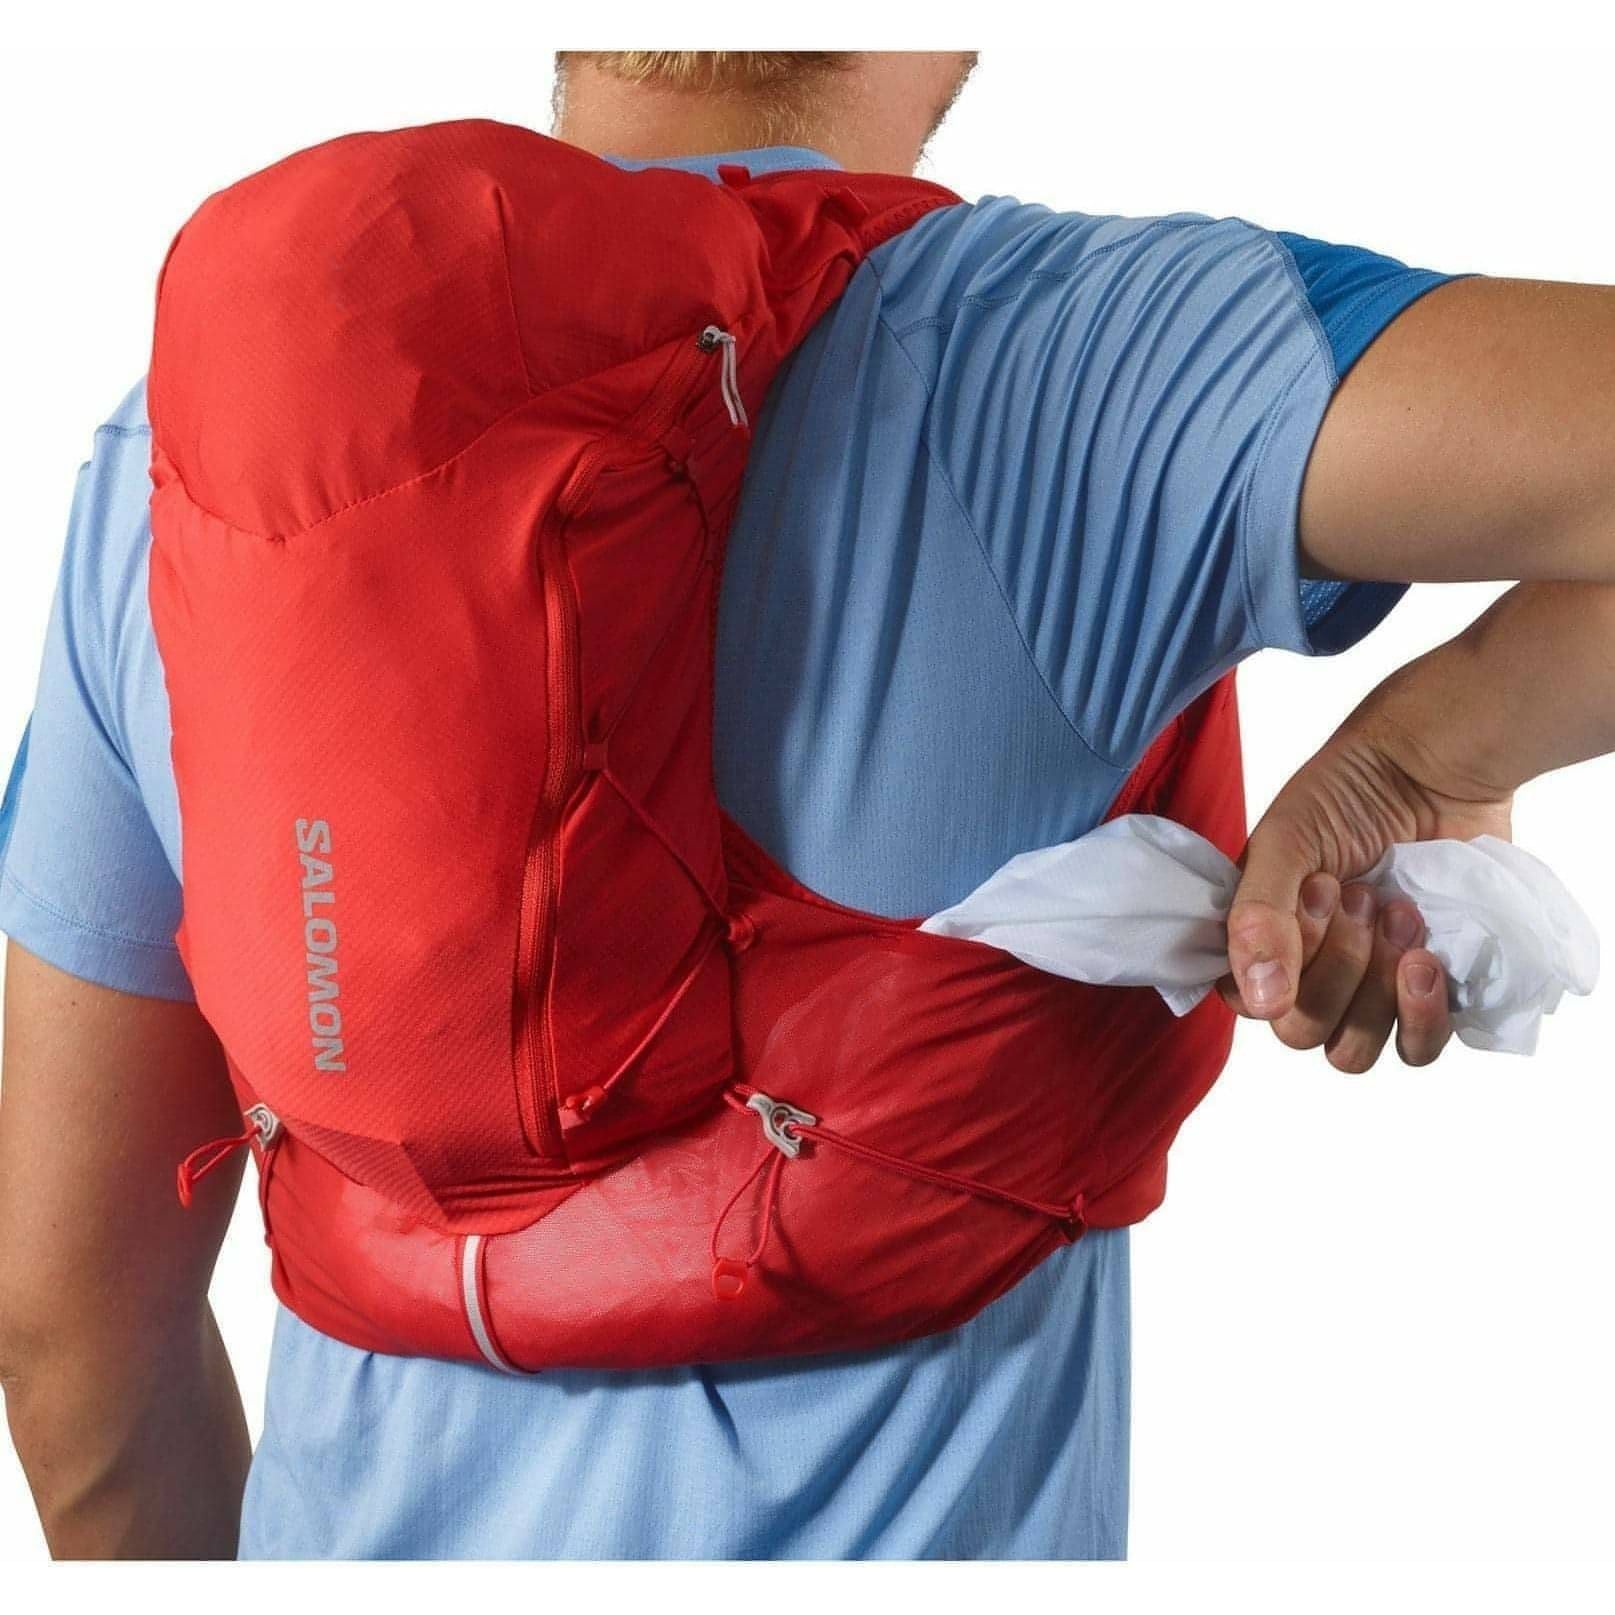 Salomon ADV Skin 12 Set Running Backpack - Red - Start Fitness